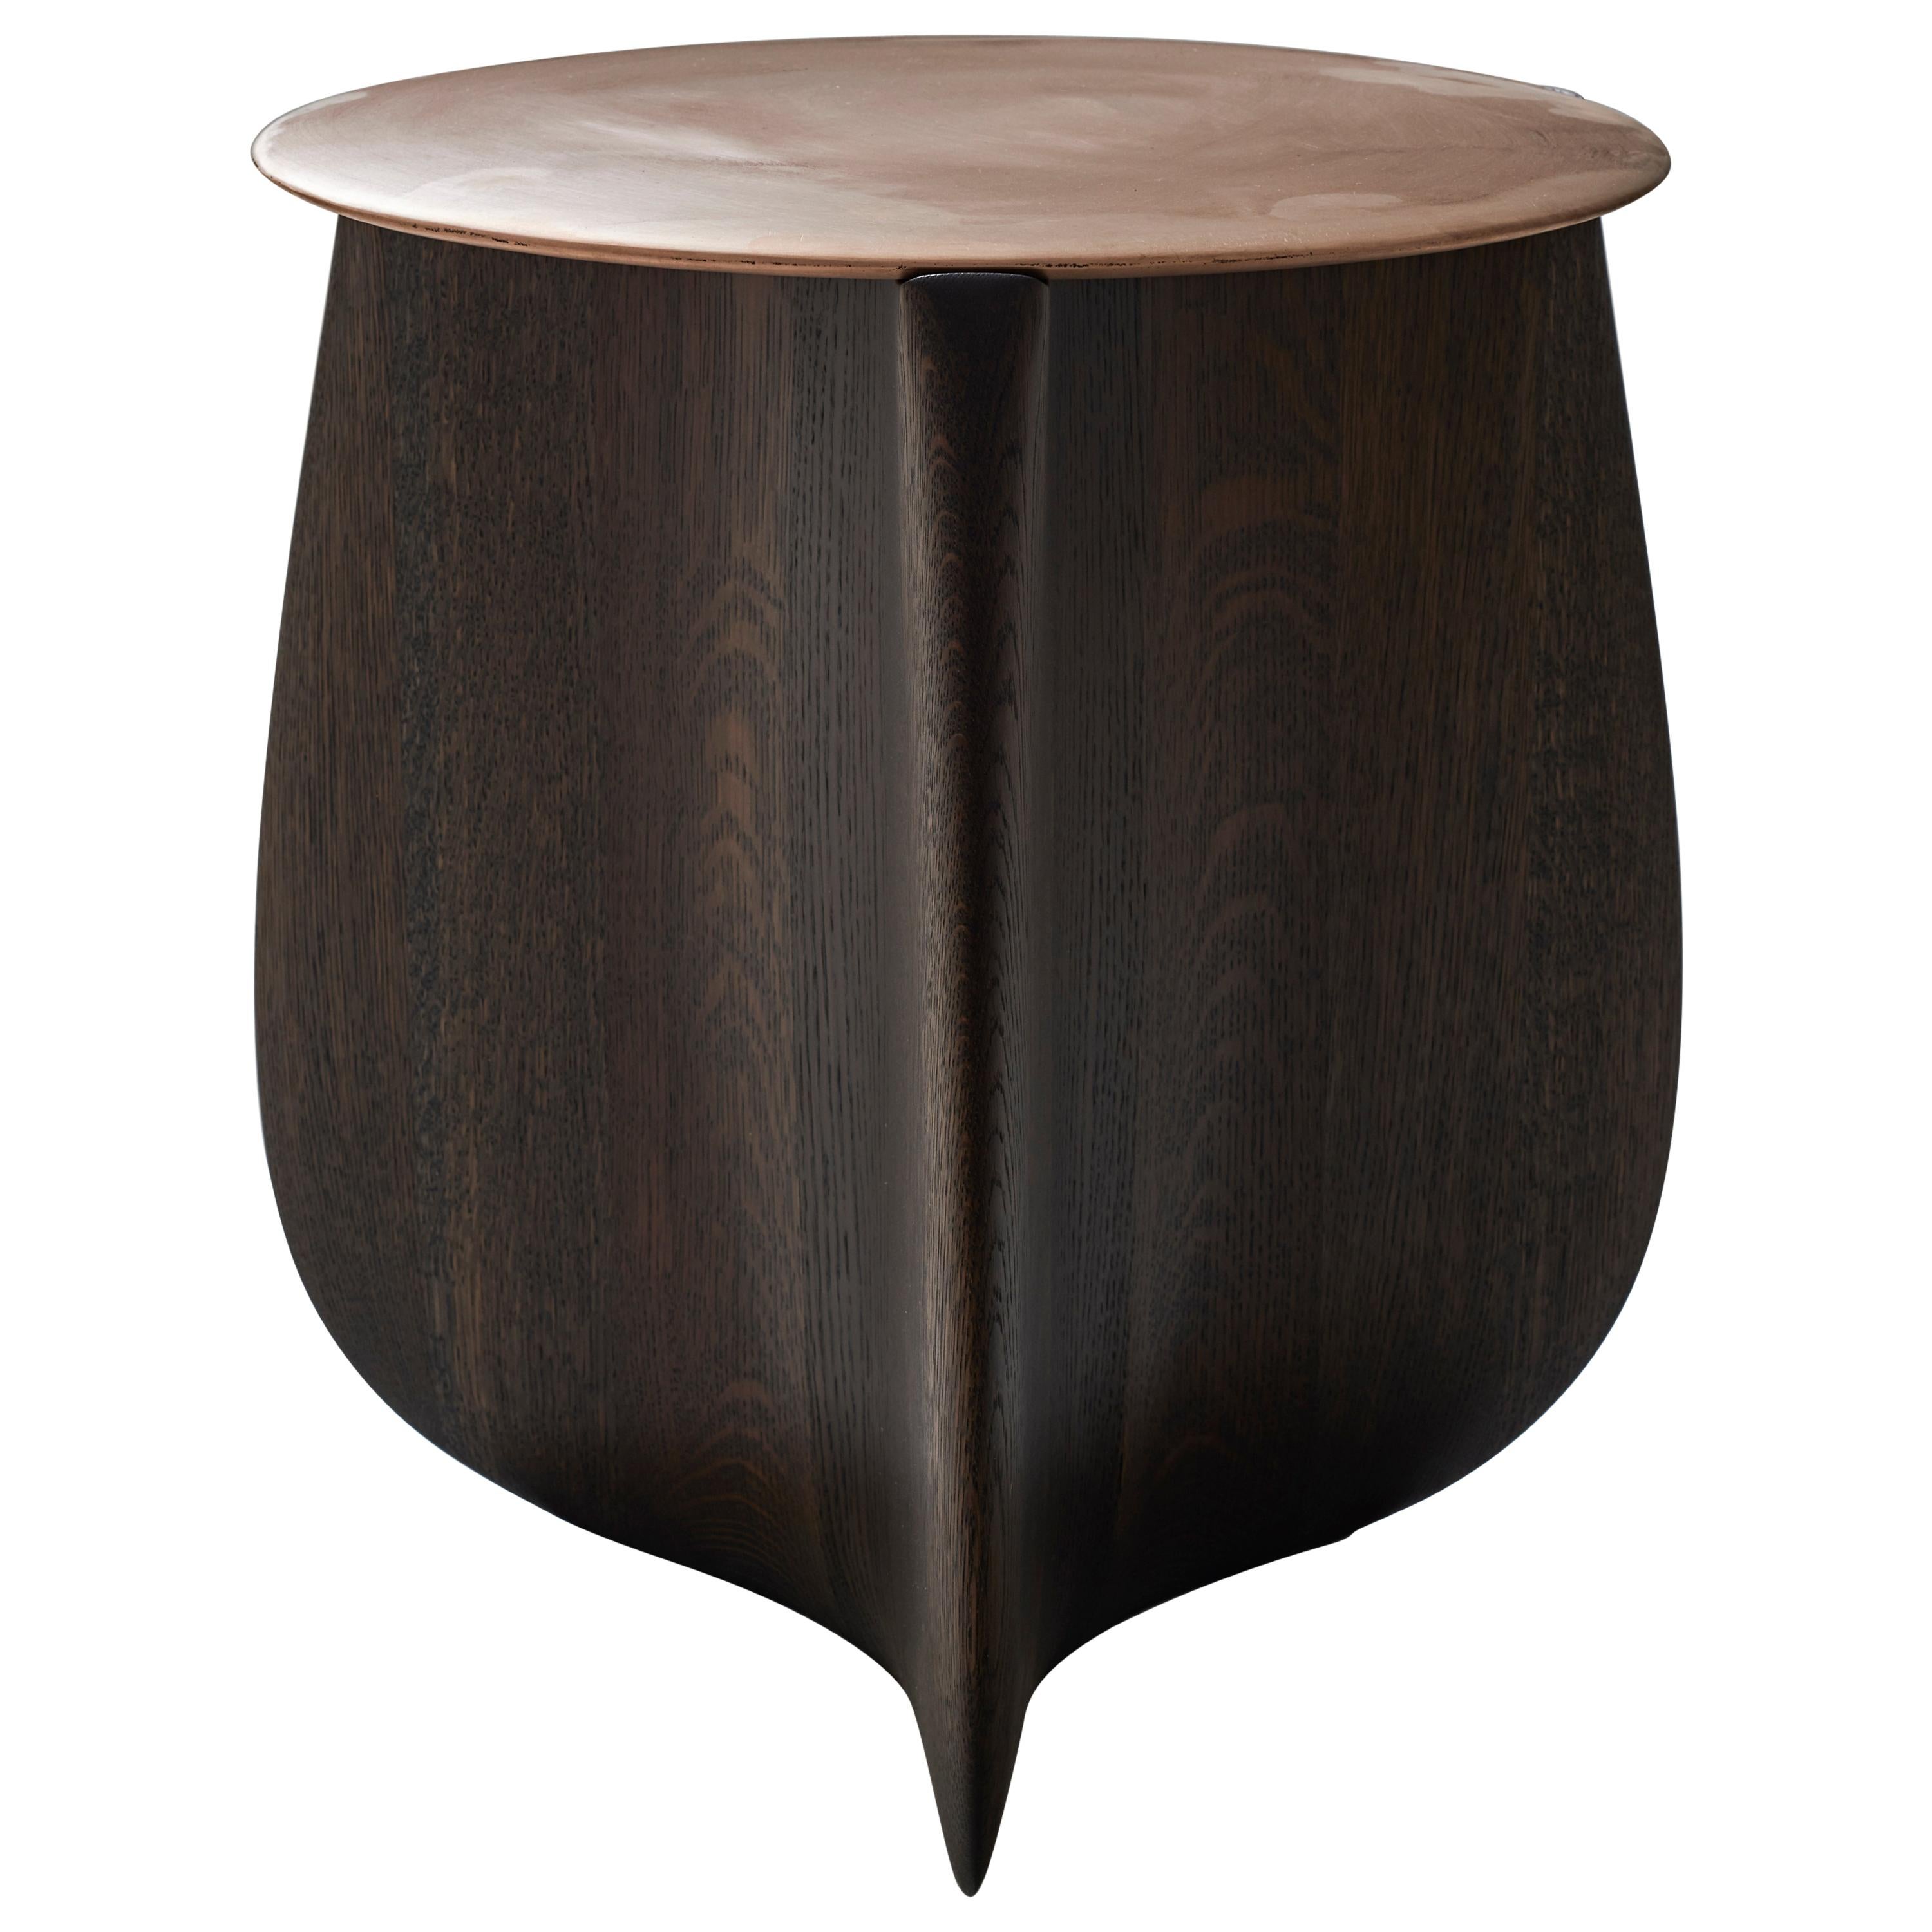 Sine Solid Hardwood Side Table by Izm Design